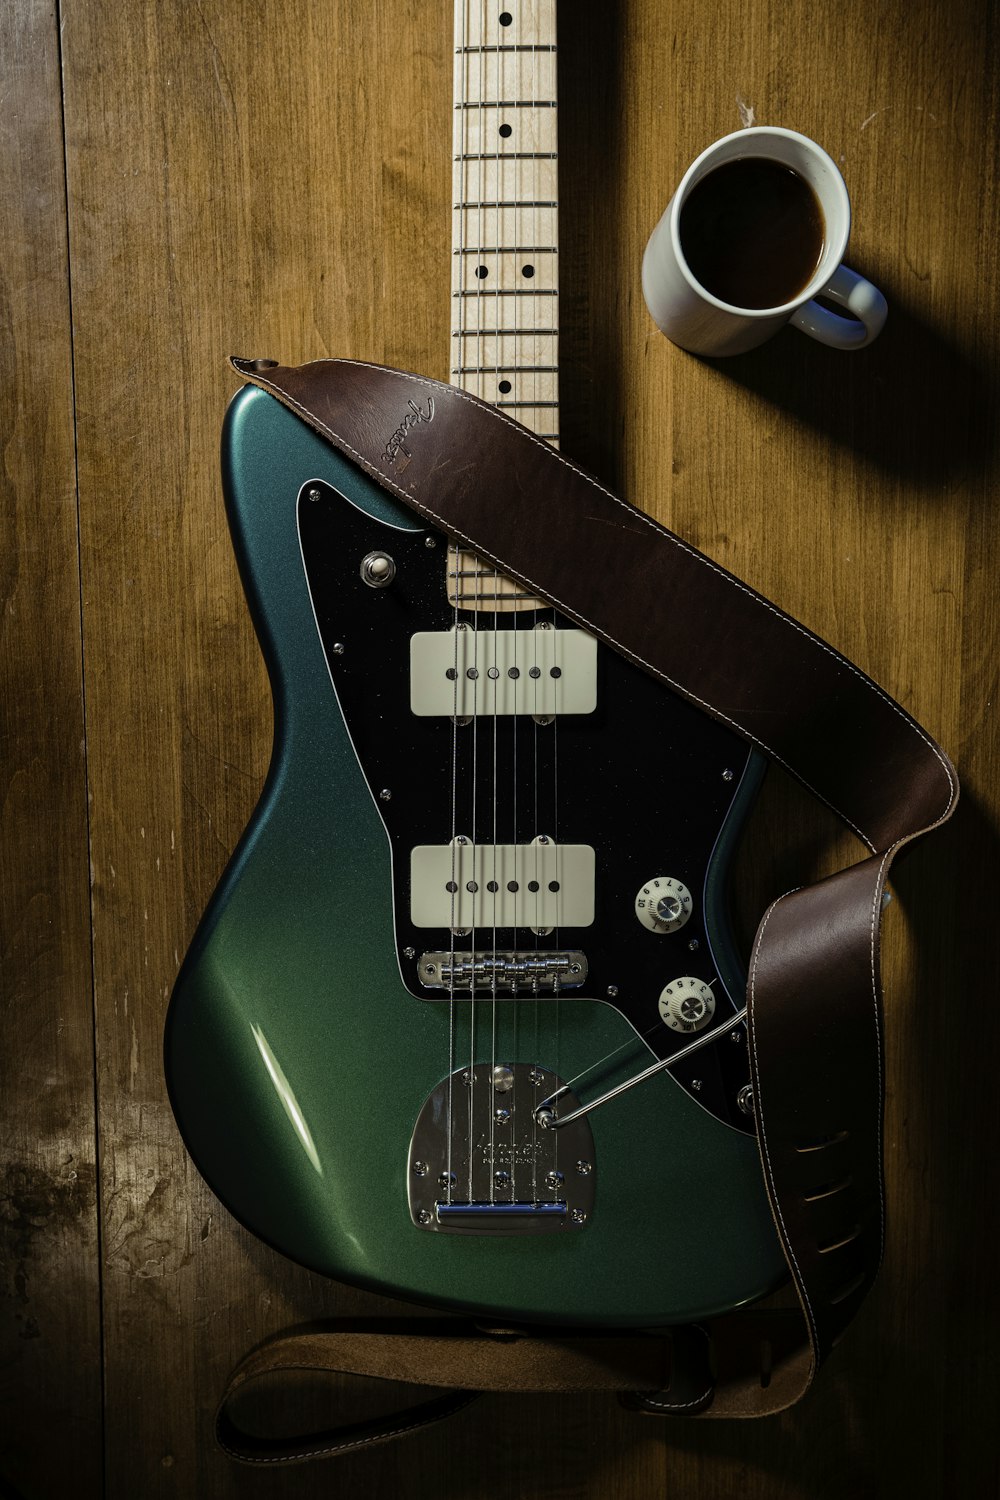 eine grüne Gitarre auf einem Tisch neben einer Tasse Kaffee